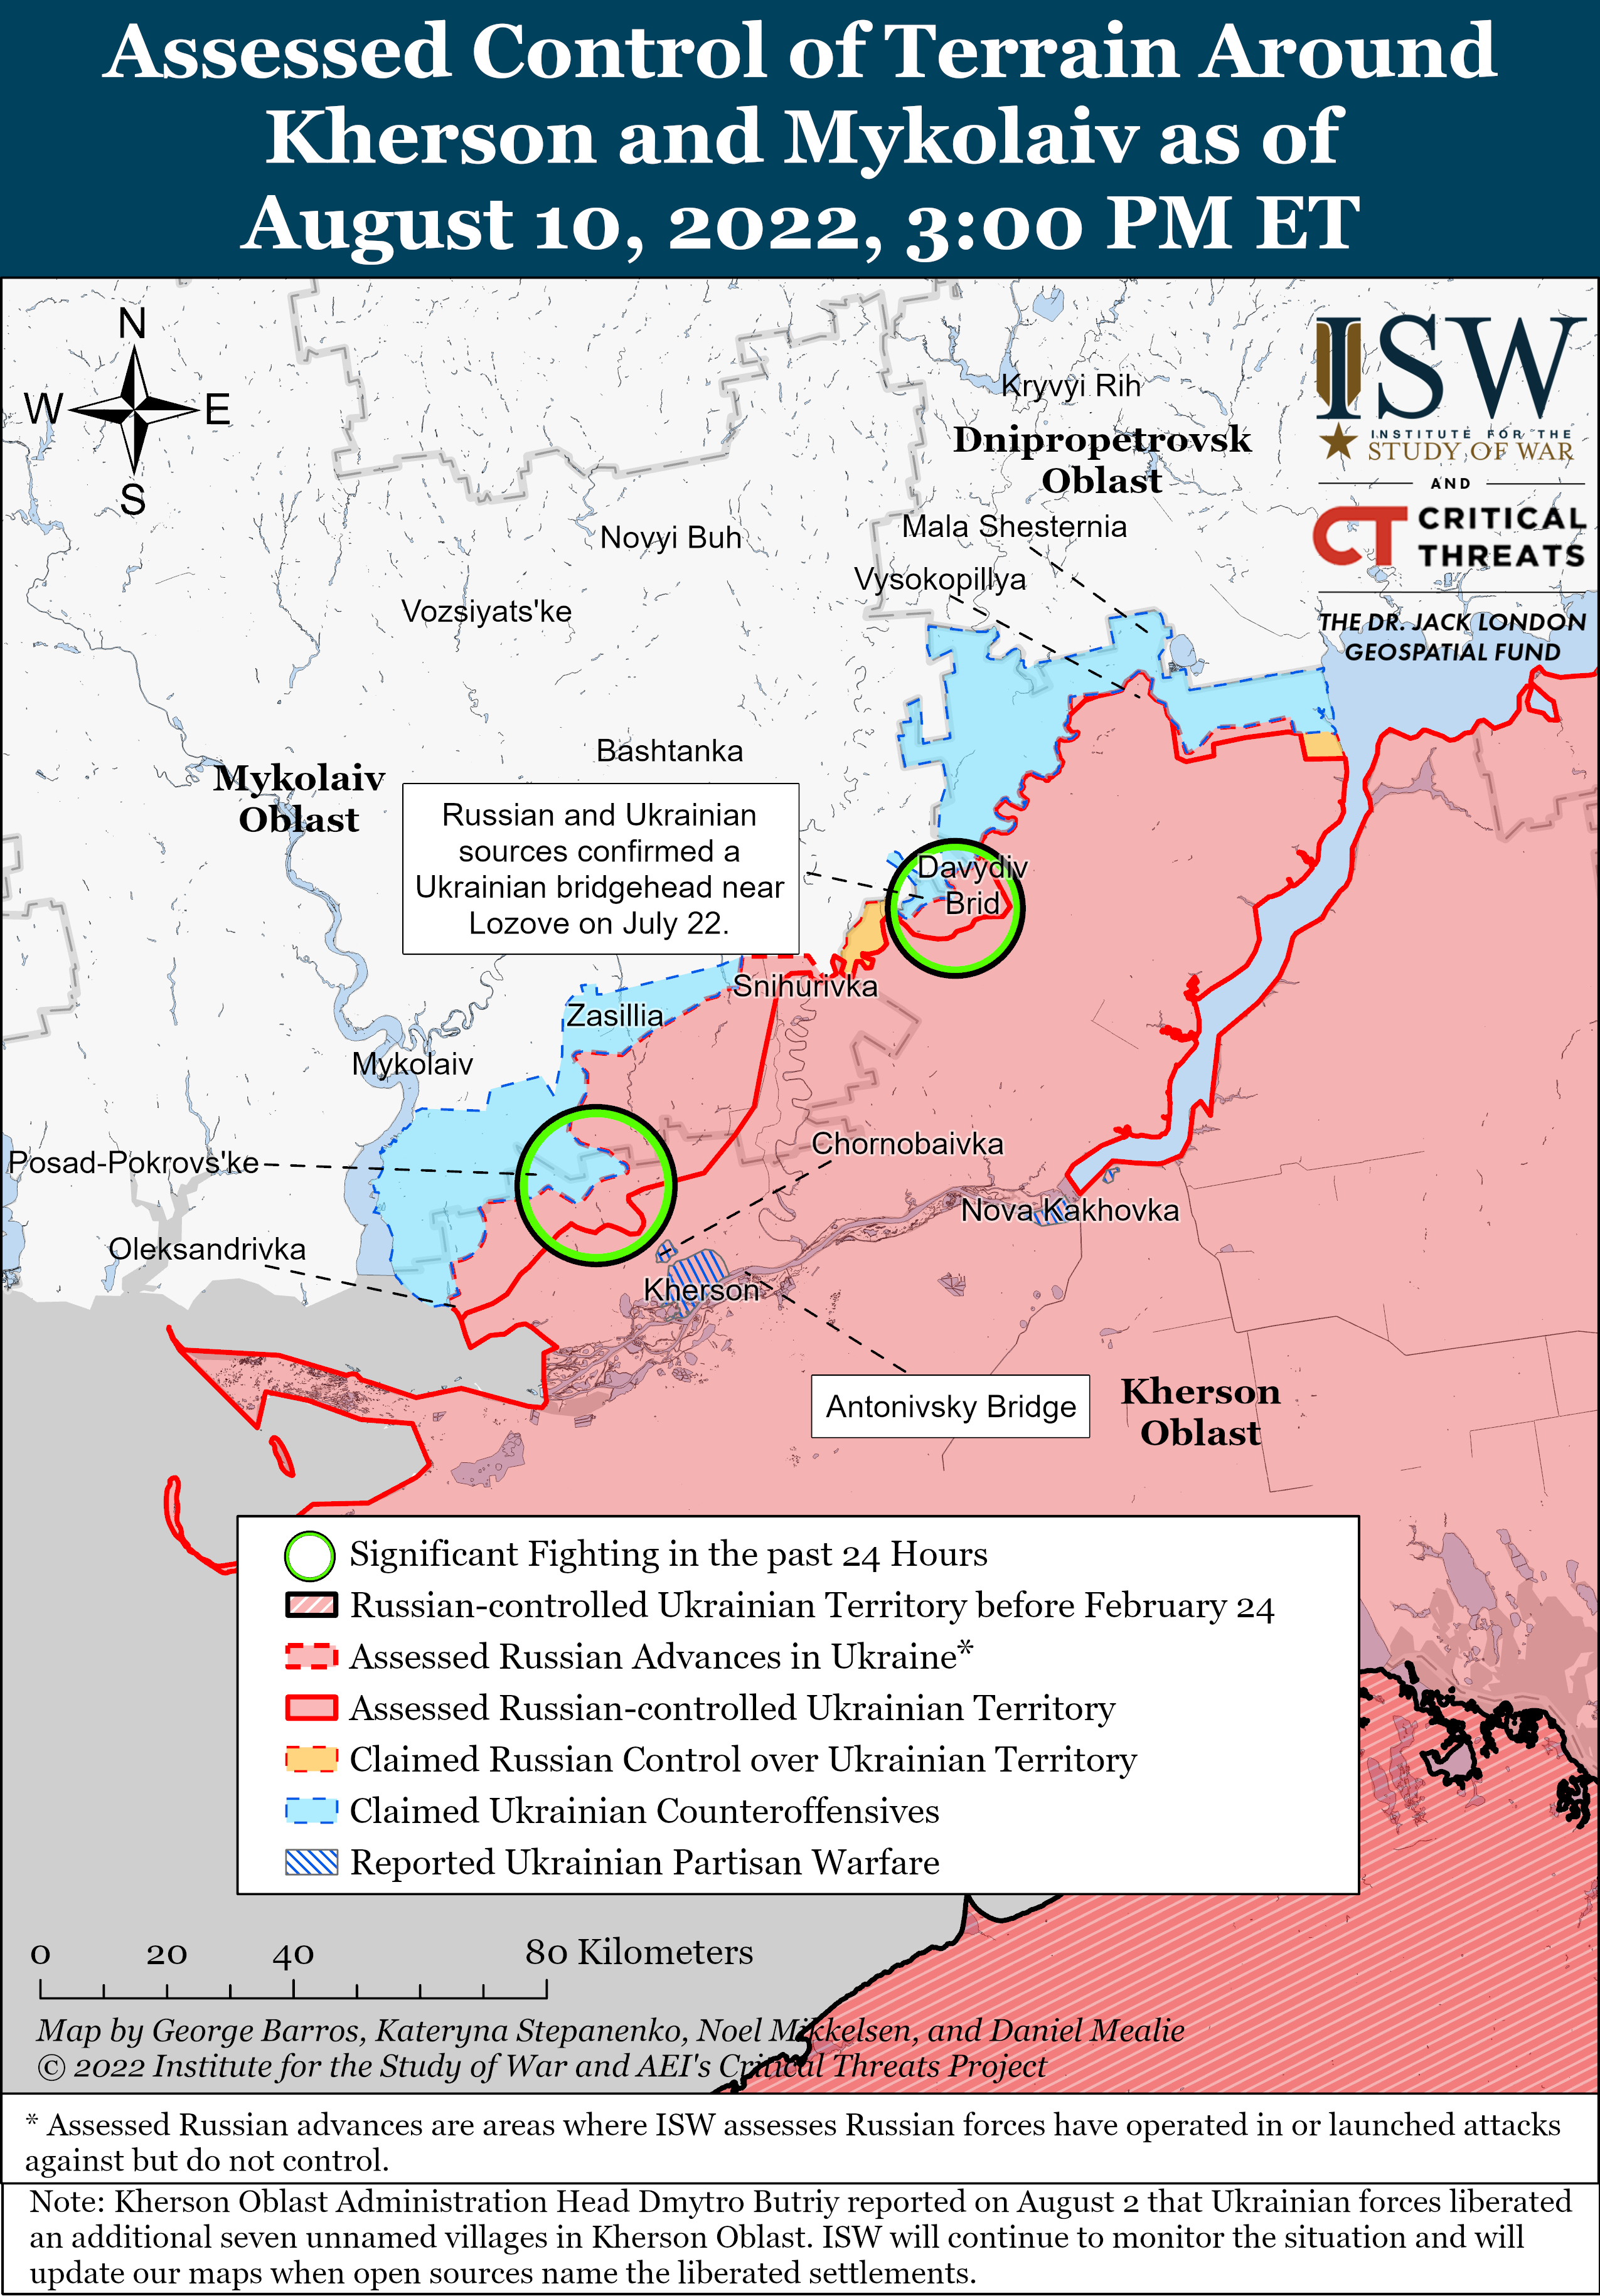 Wie ist der aktuelle Stand (10.08.22) der russischen Truppen in der Ukraine?